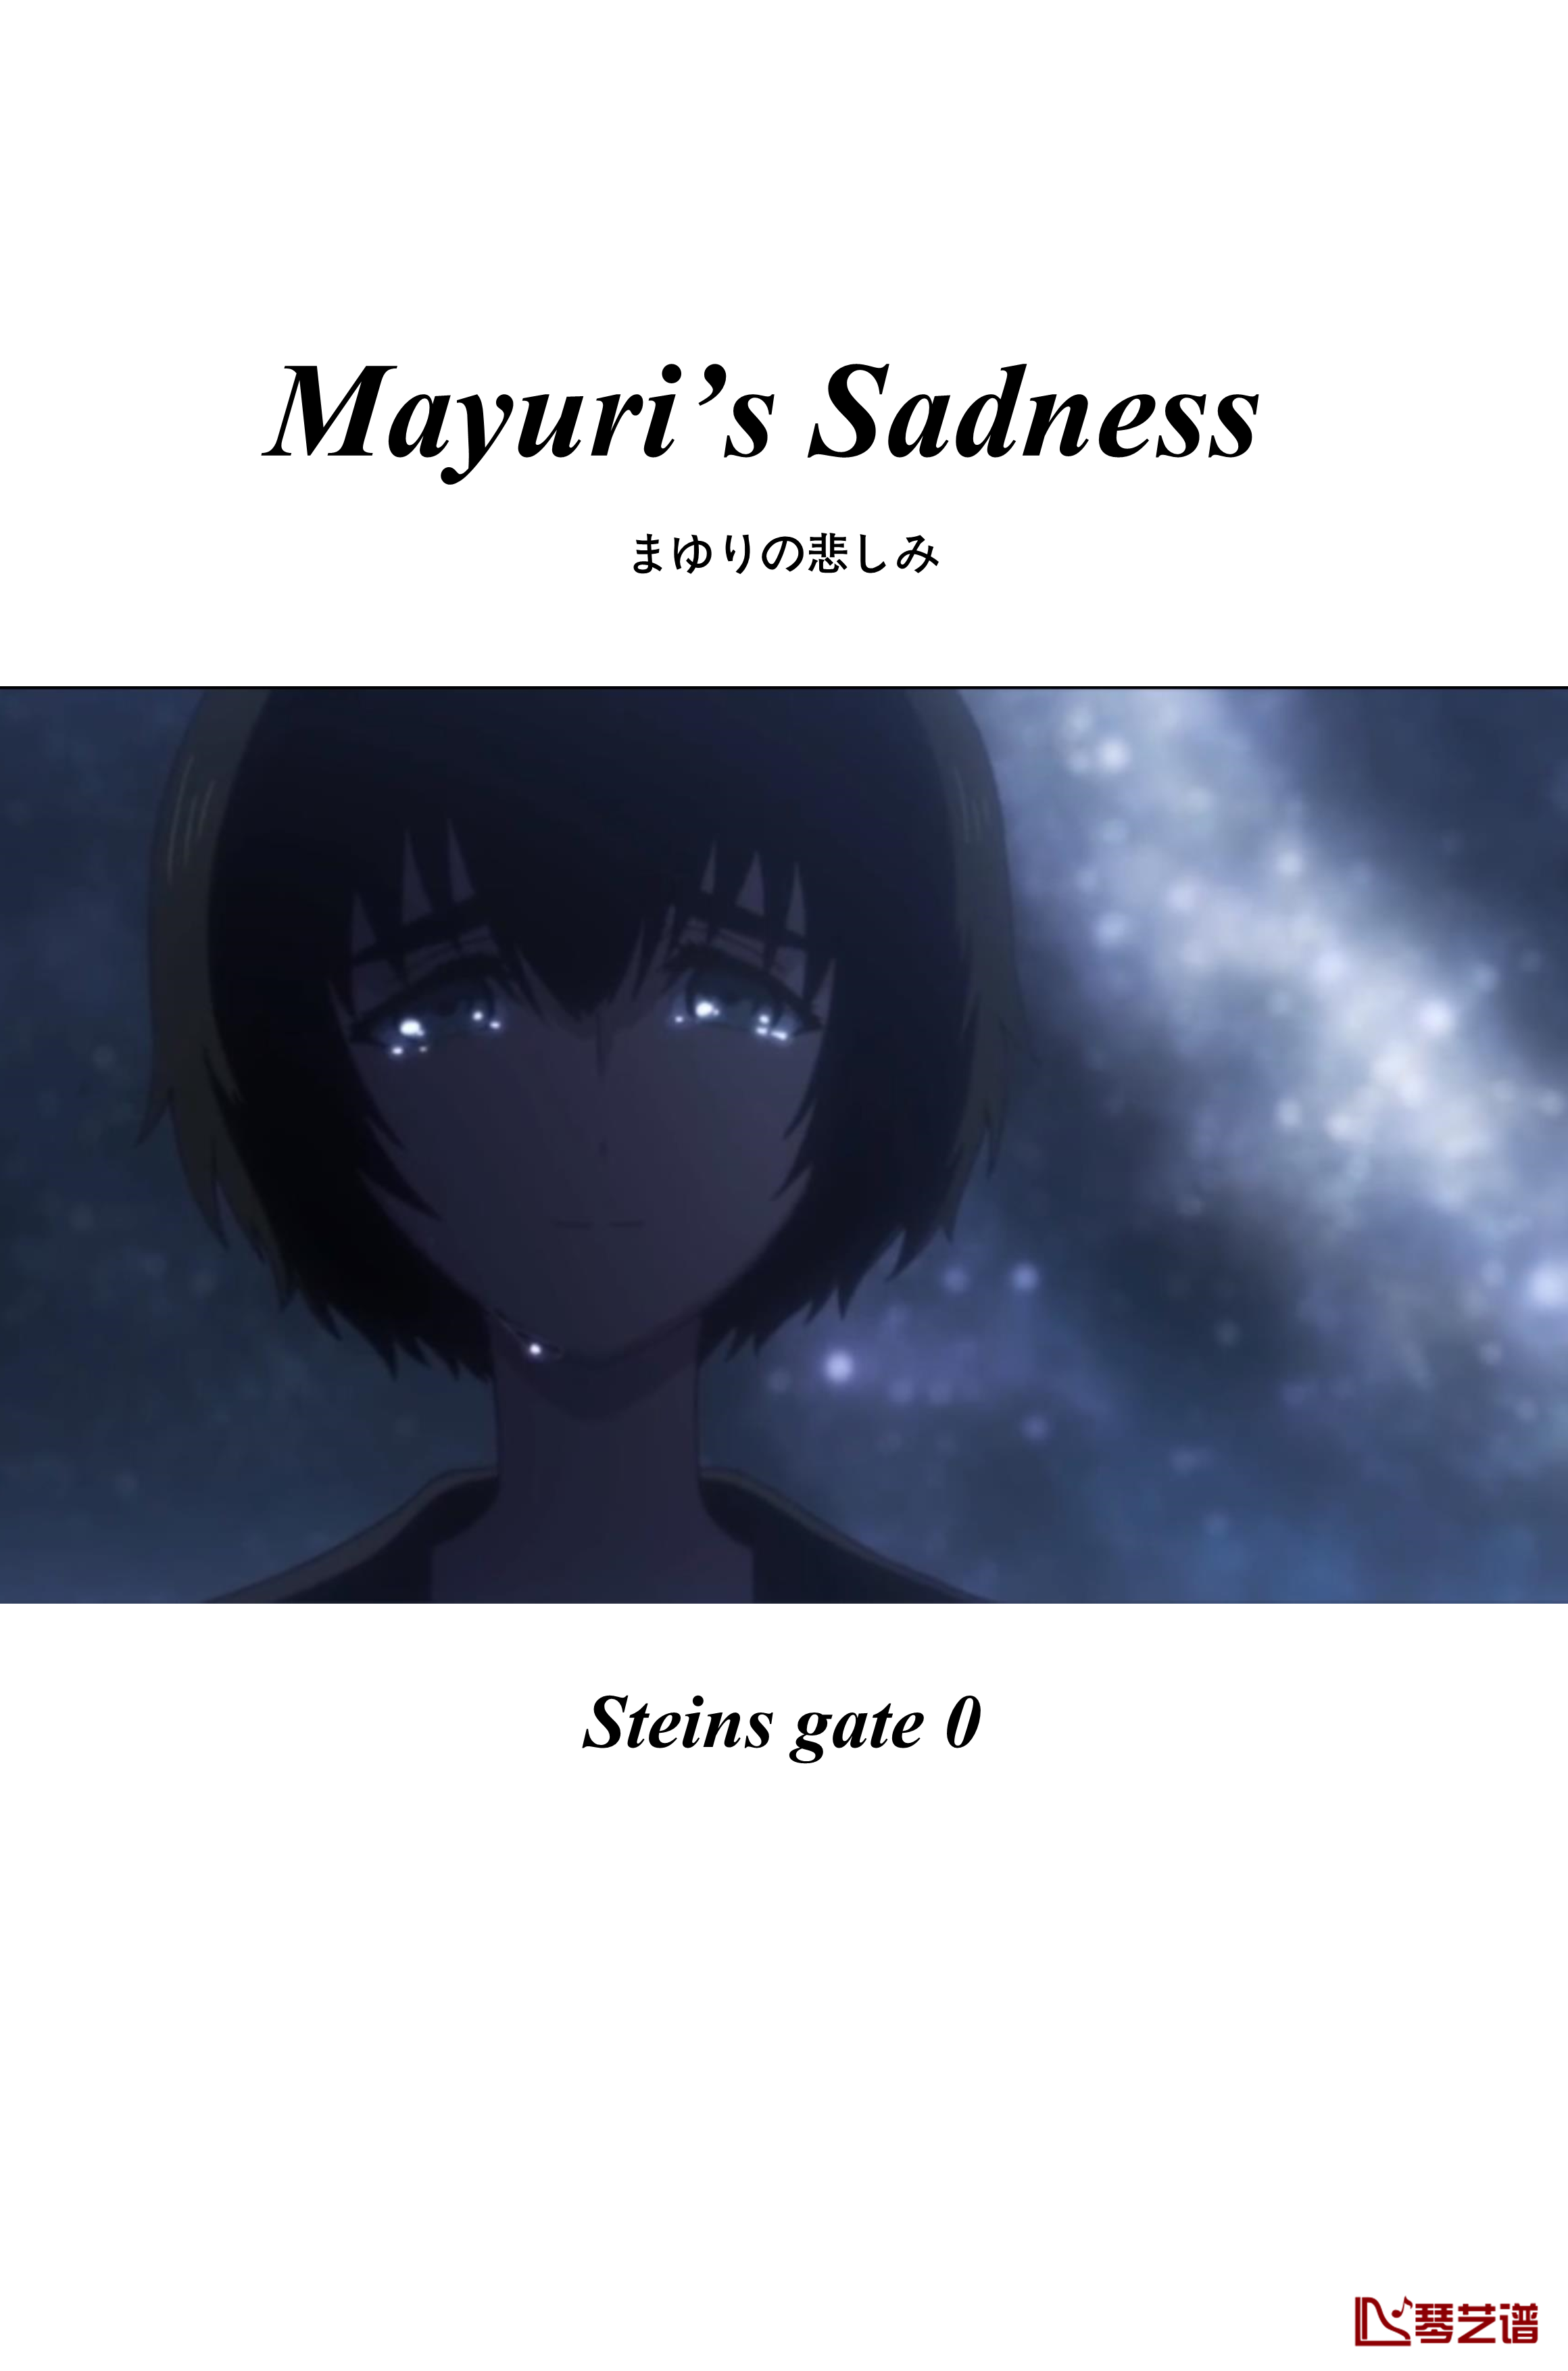 命运石之门0钢琴谱-ostまゆりの悲しみ-Mayuri’s Sadness-阿保刚1